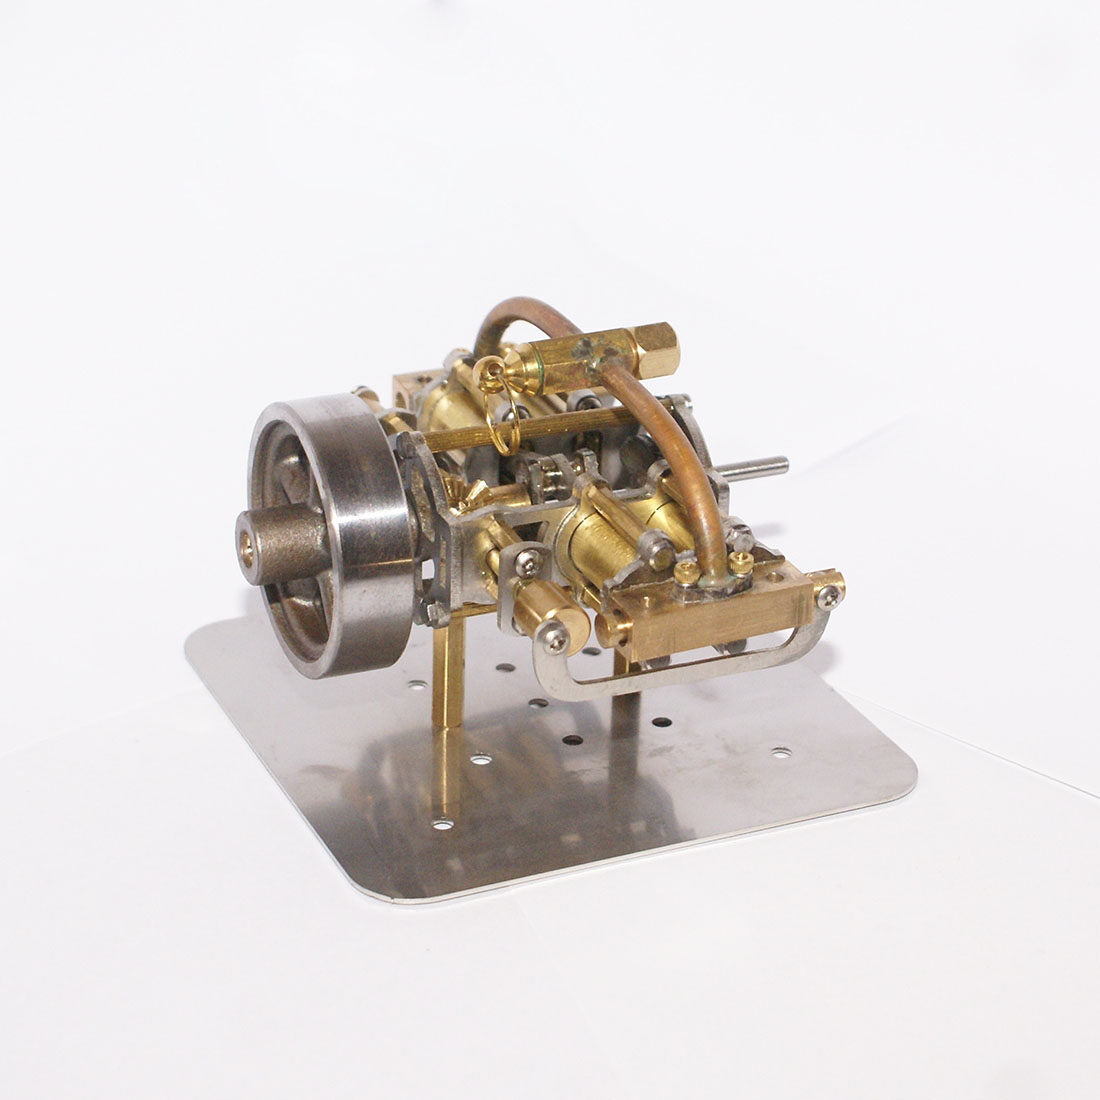 Miniatur-Dampfmaschinenmodell mit vier Zylindern in horizontaler Gegenüberstellung, ohne Kessel für Modellschiff-Geschenksammlung 3